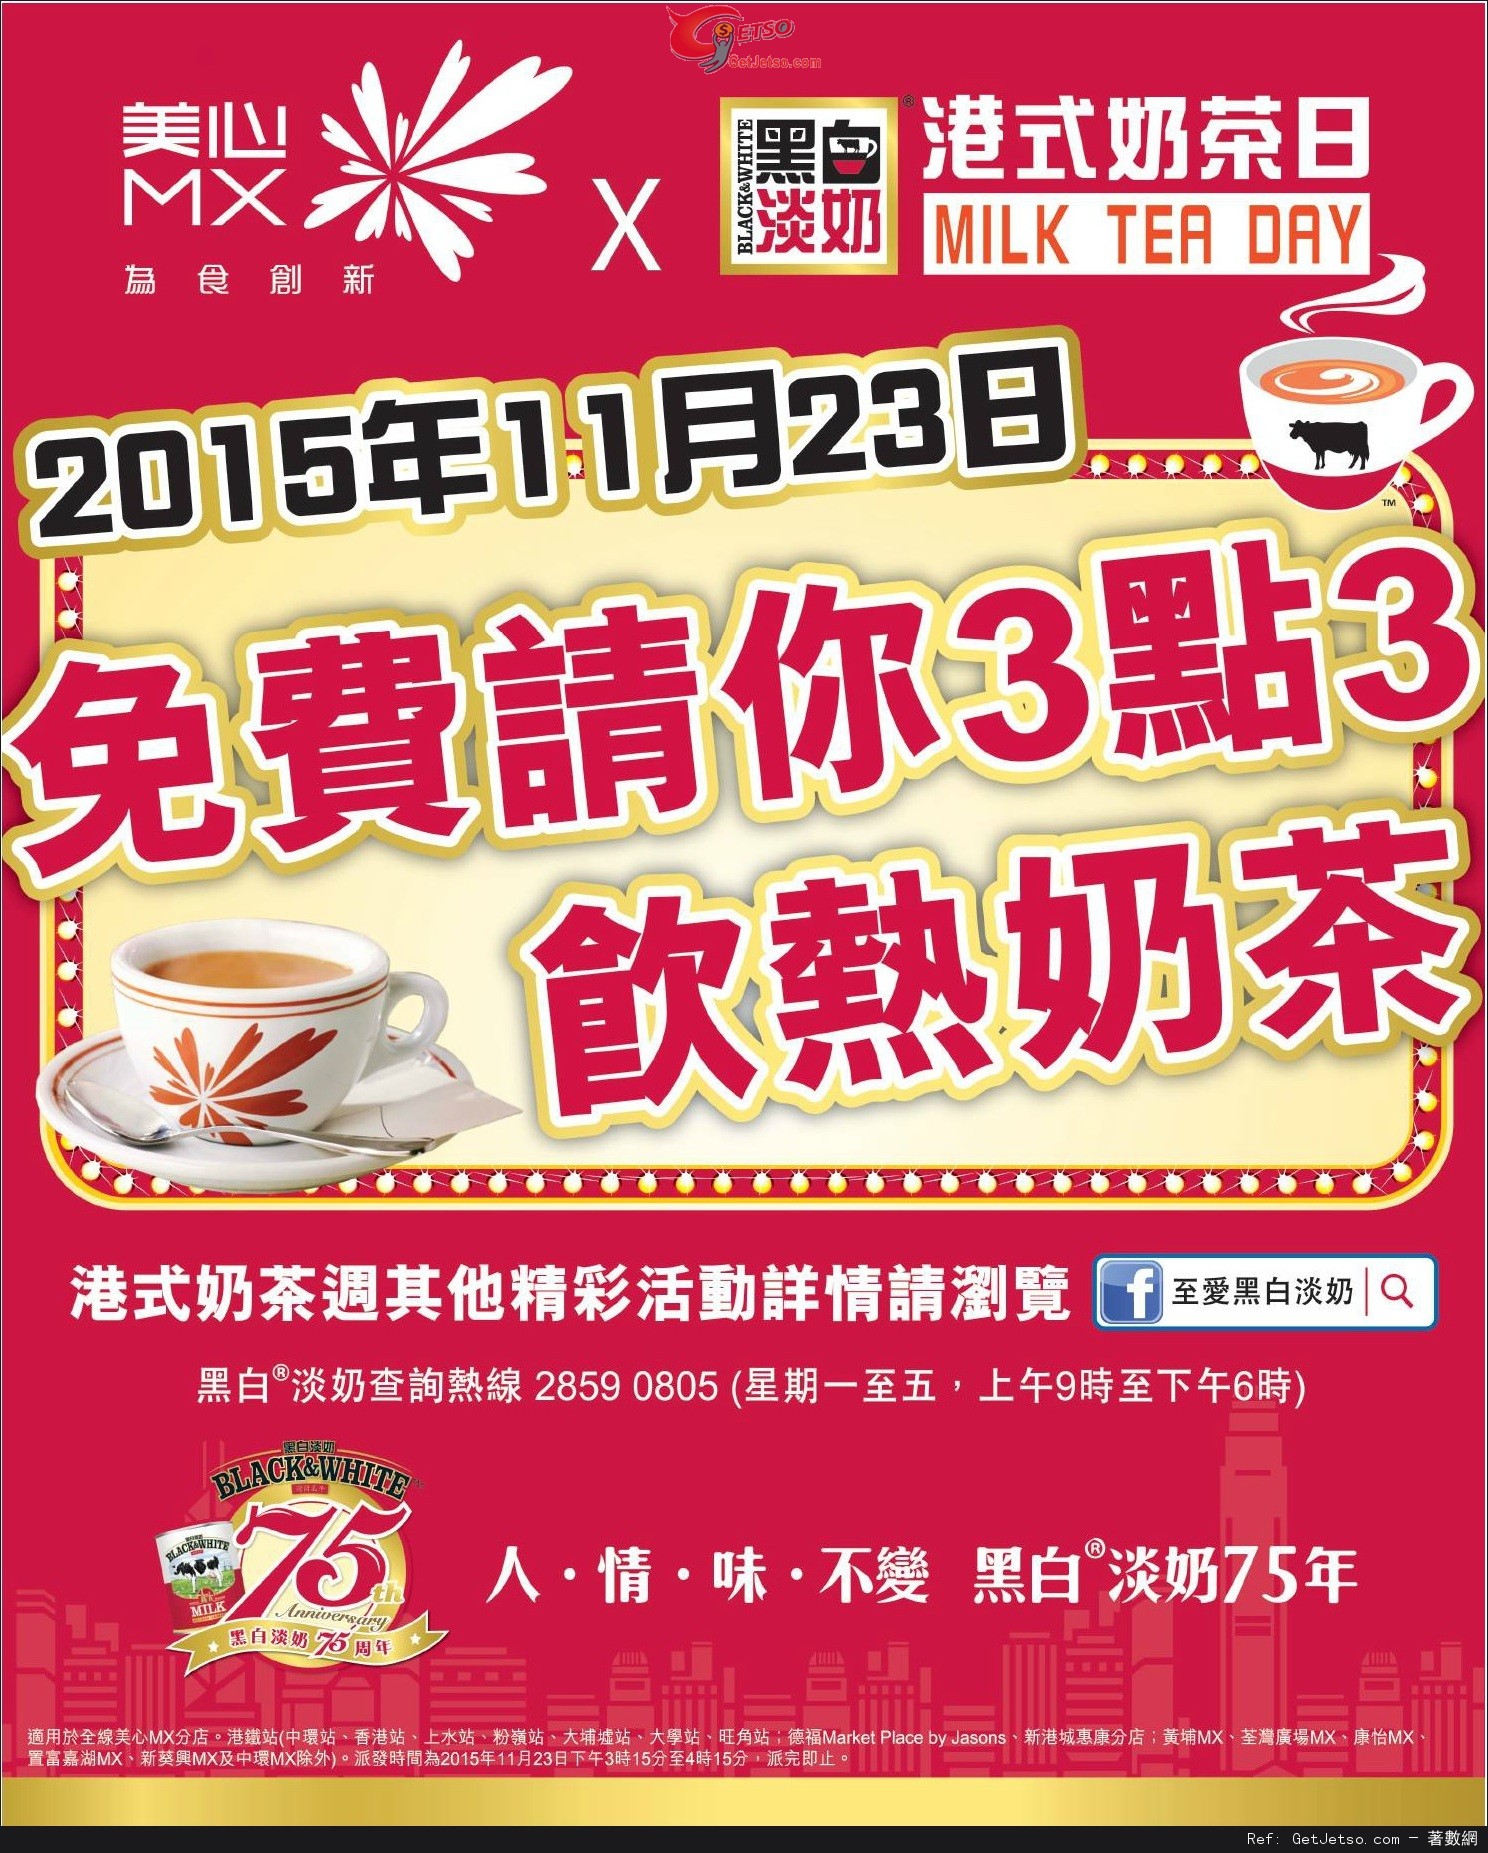 美心MX免費送熱奶茶優惠(15年11月23日)圖片1